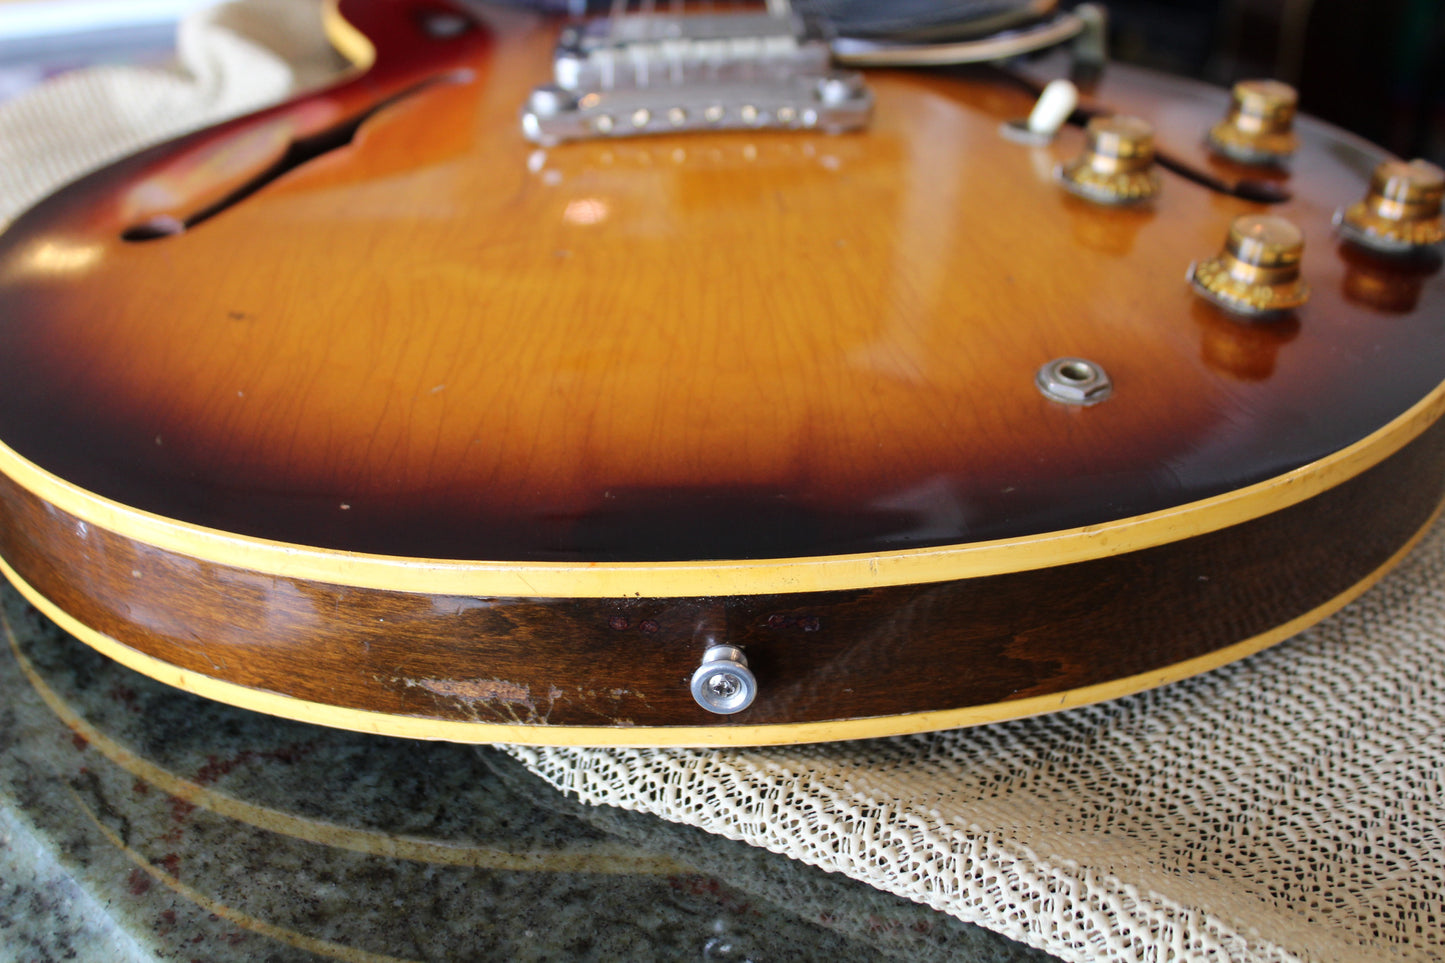 1962 Gibson ES-335